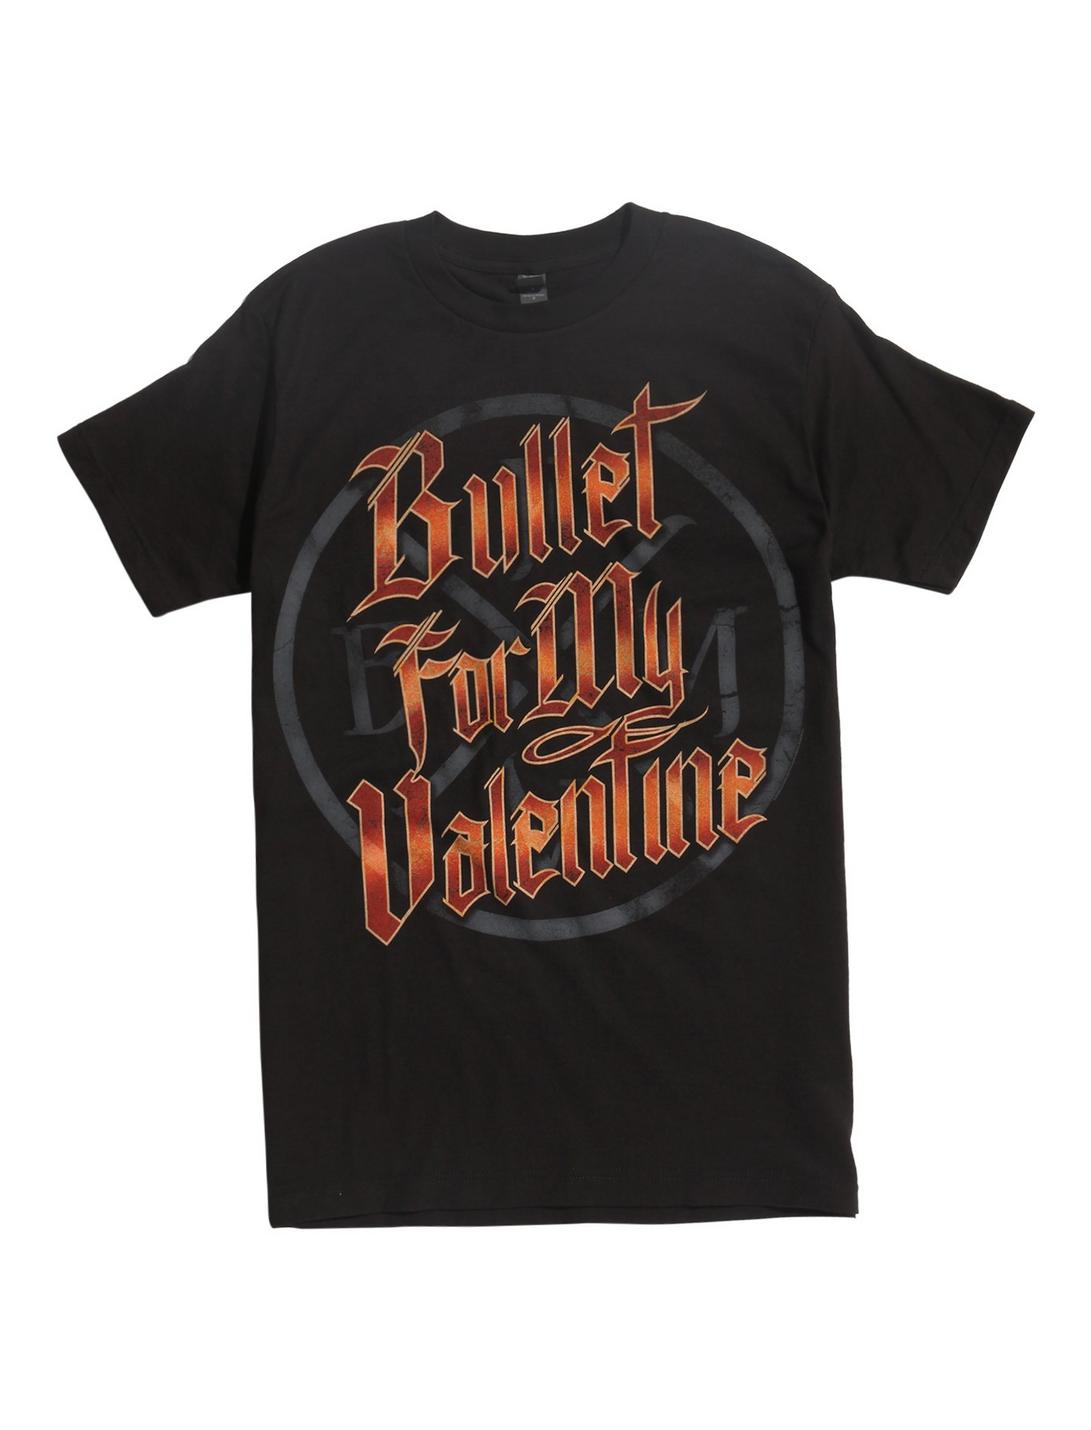 Bullet For My Valentine Black T-Shirt, BLACK, hi-res